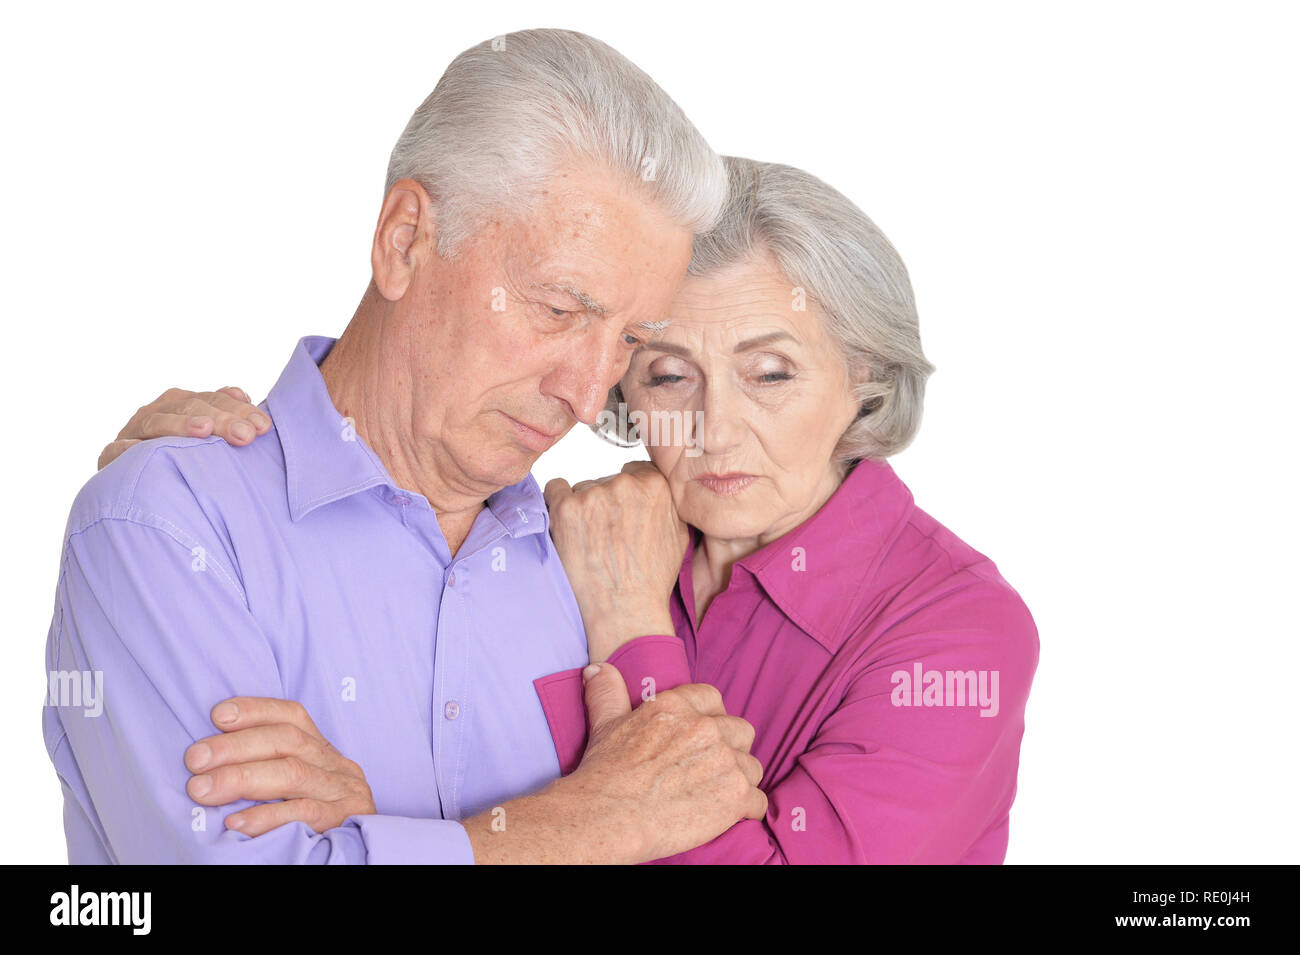 Portrait of sad senior couple isolated on white background Stock Photo